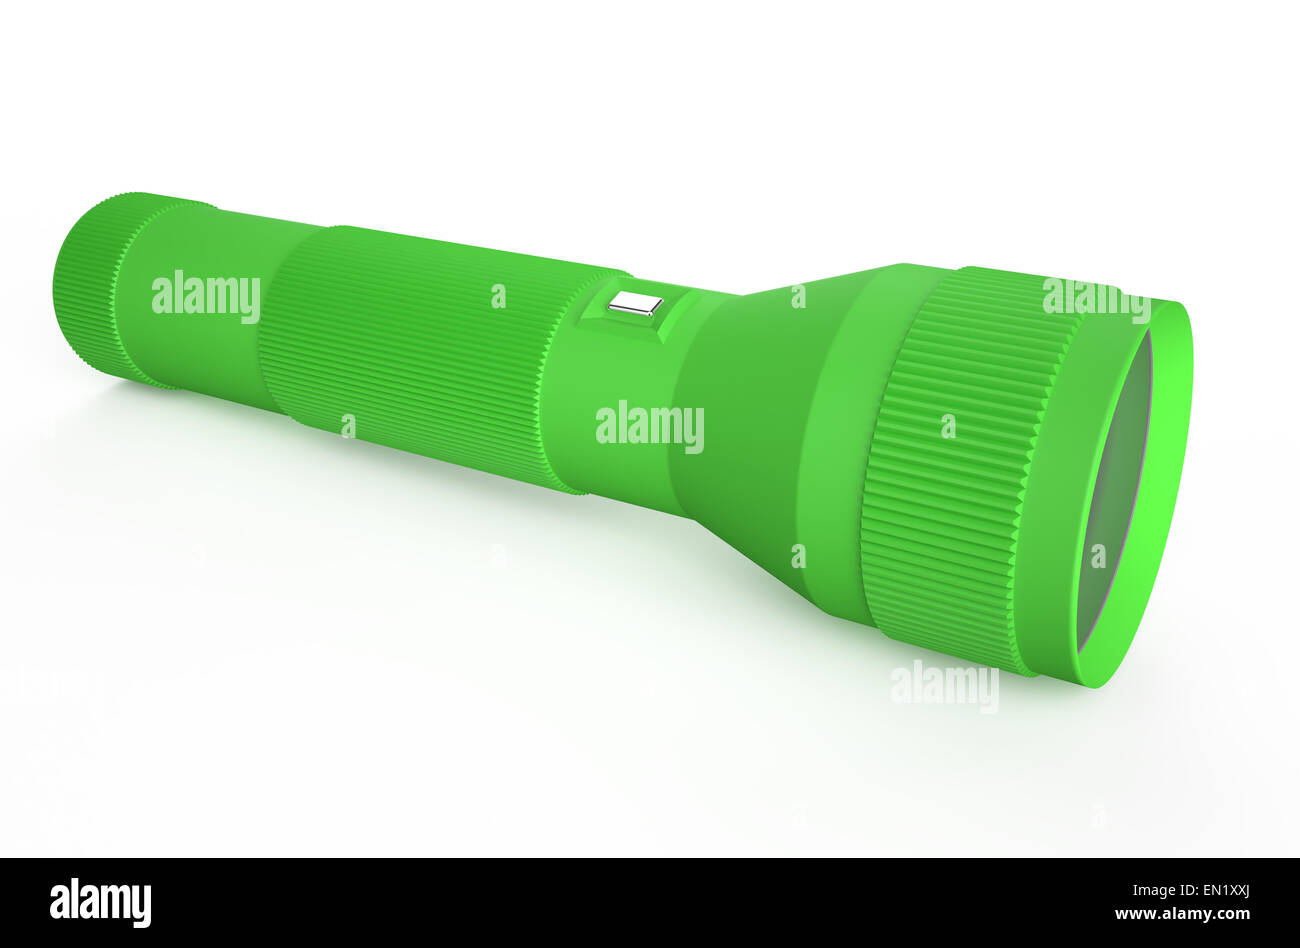 grüne Taschenlampe isoliert auf weißem Hintergrund Stockfotografie - Alamy